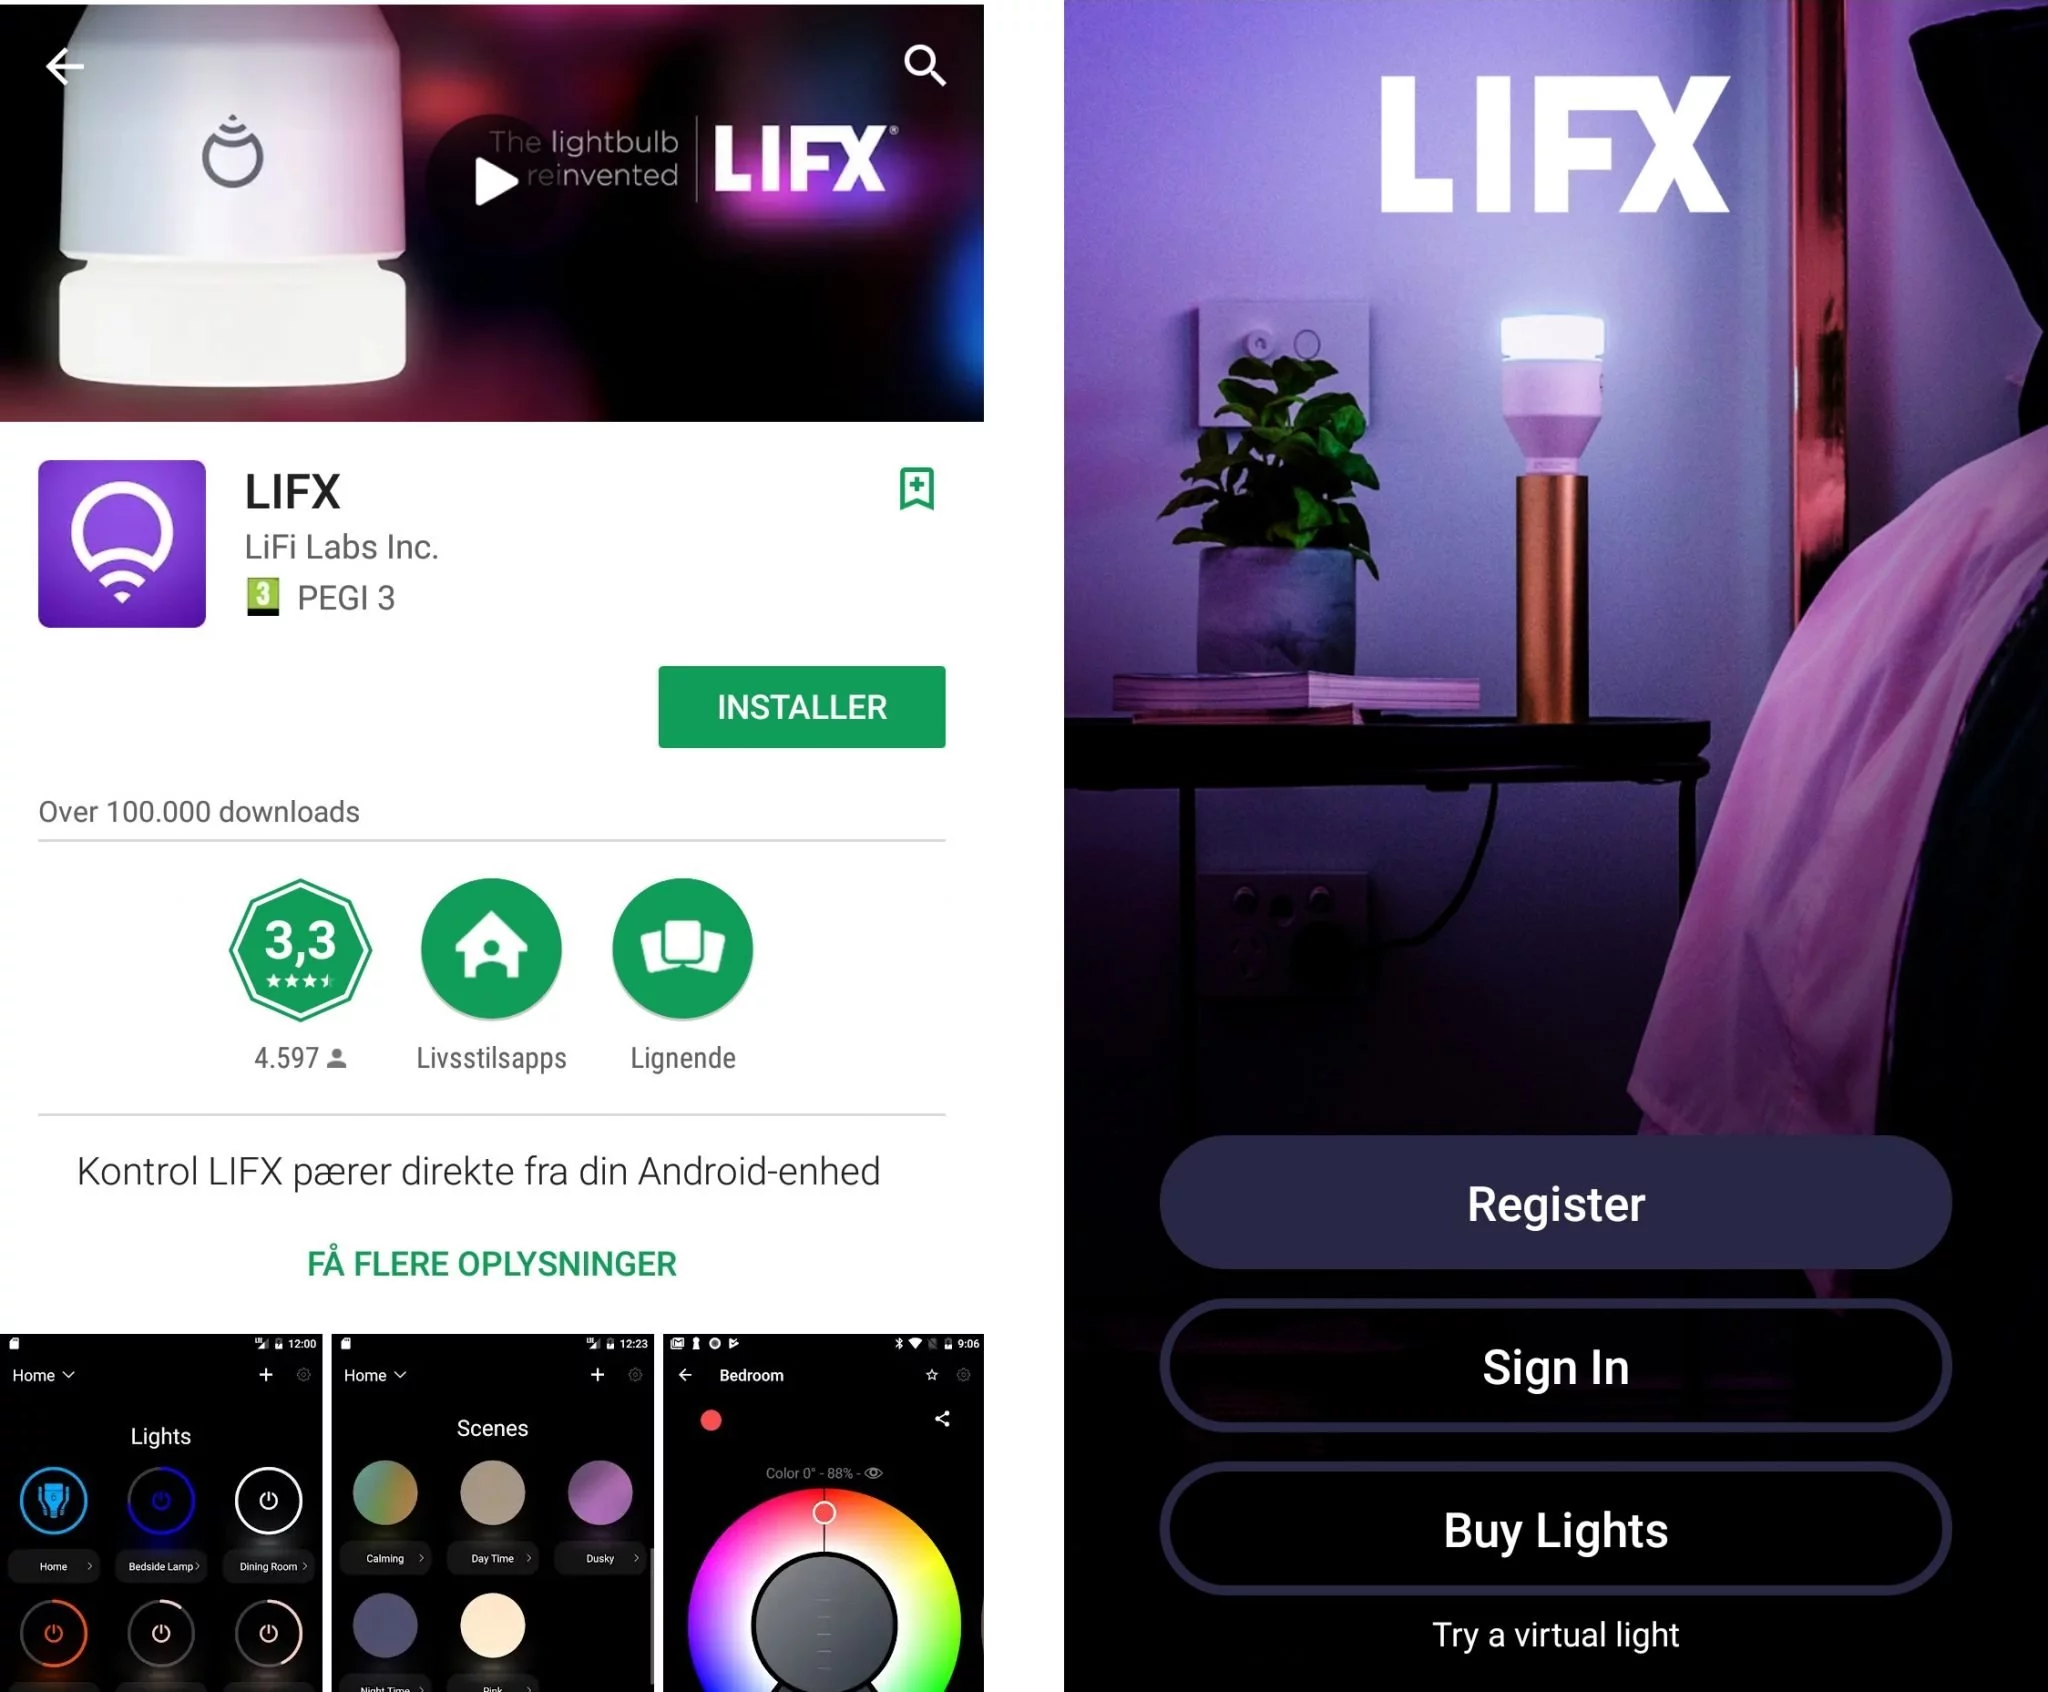 LIFX install app